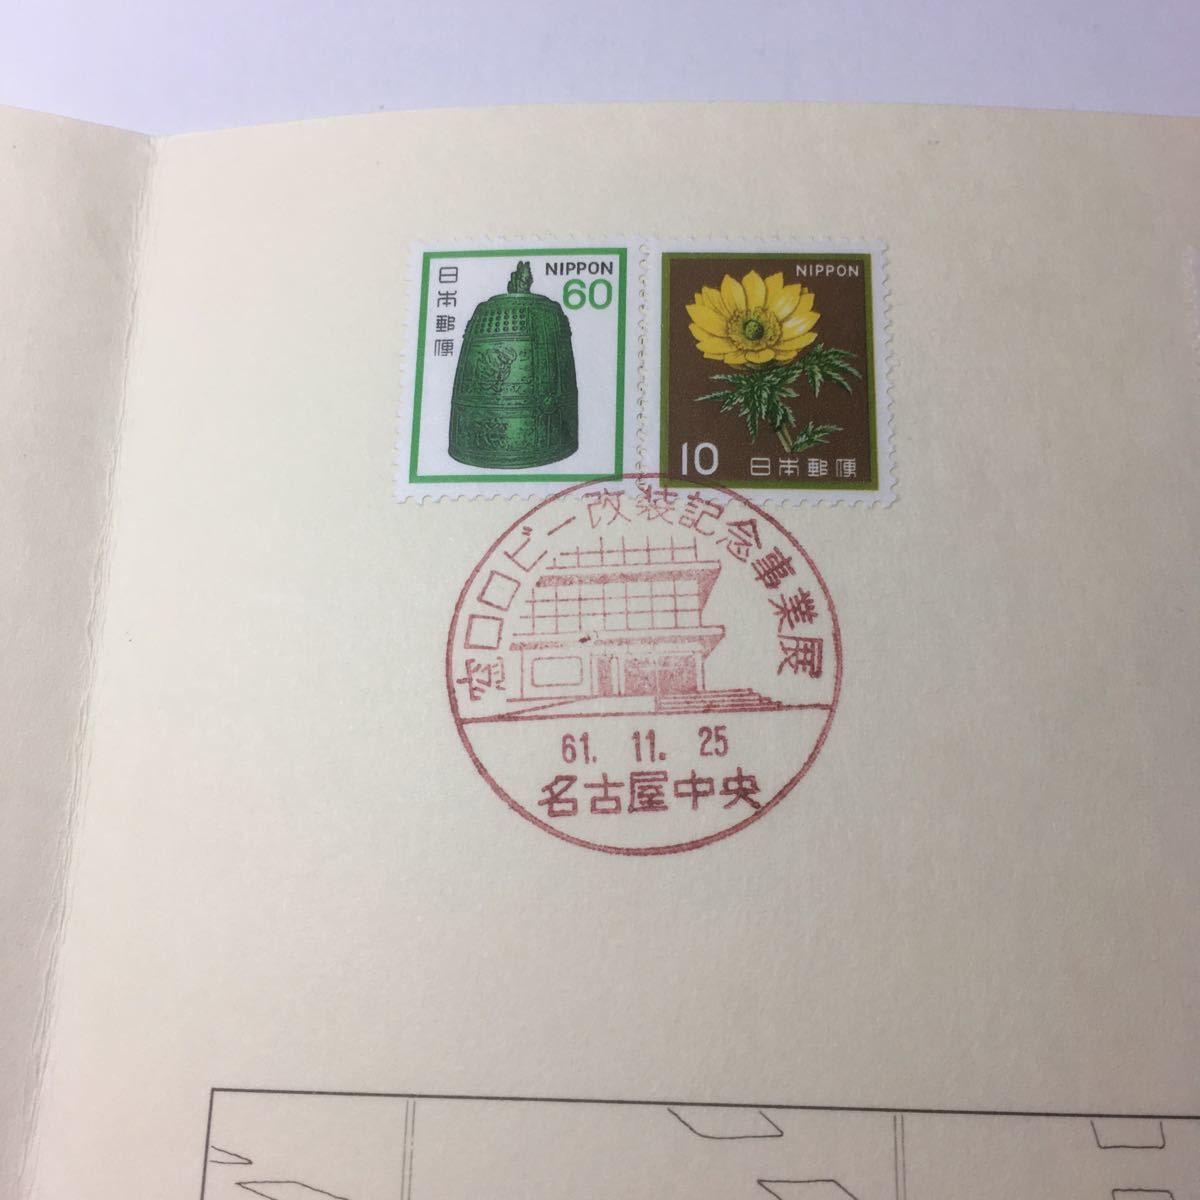 日本郵便 名古屋中央郵便局改装記念 昭和61年 11月25日 印押し_画像4